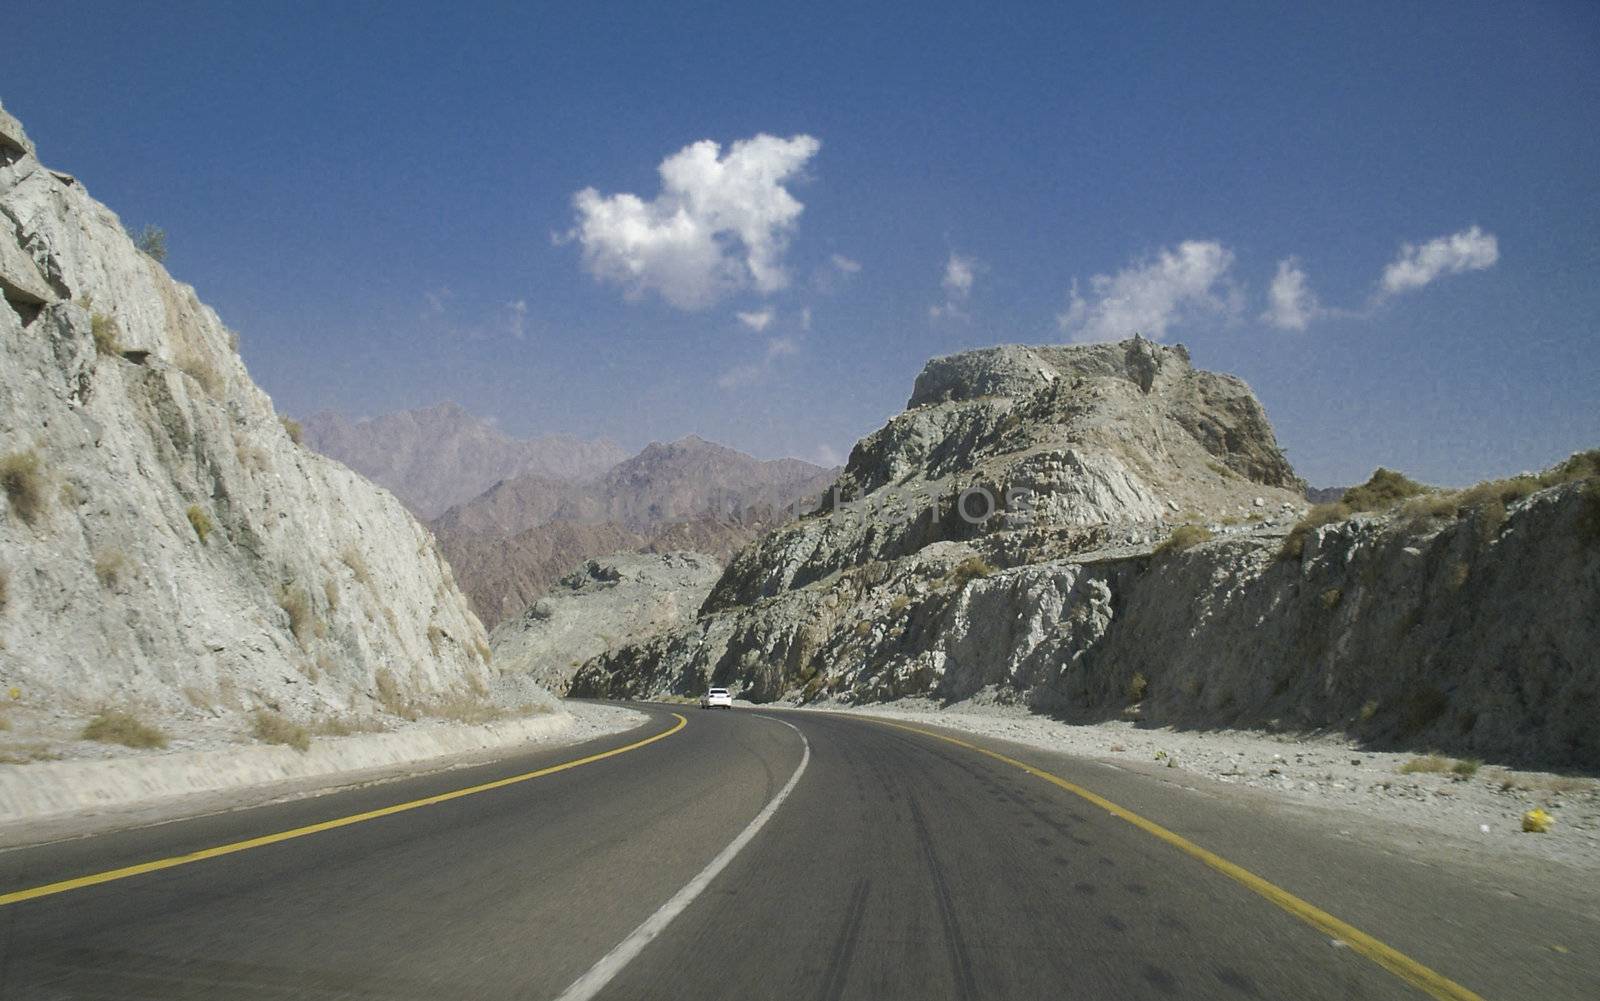 Empty Road in the desert